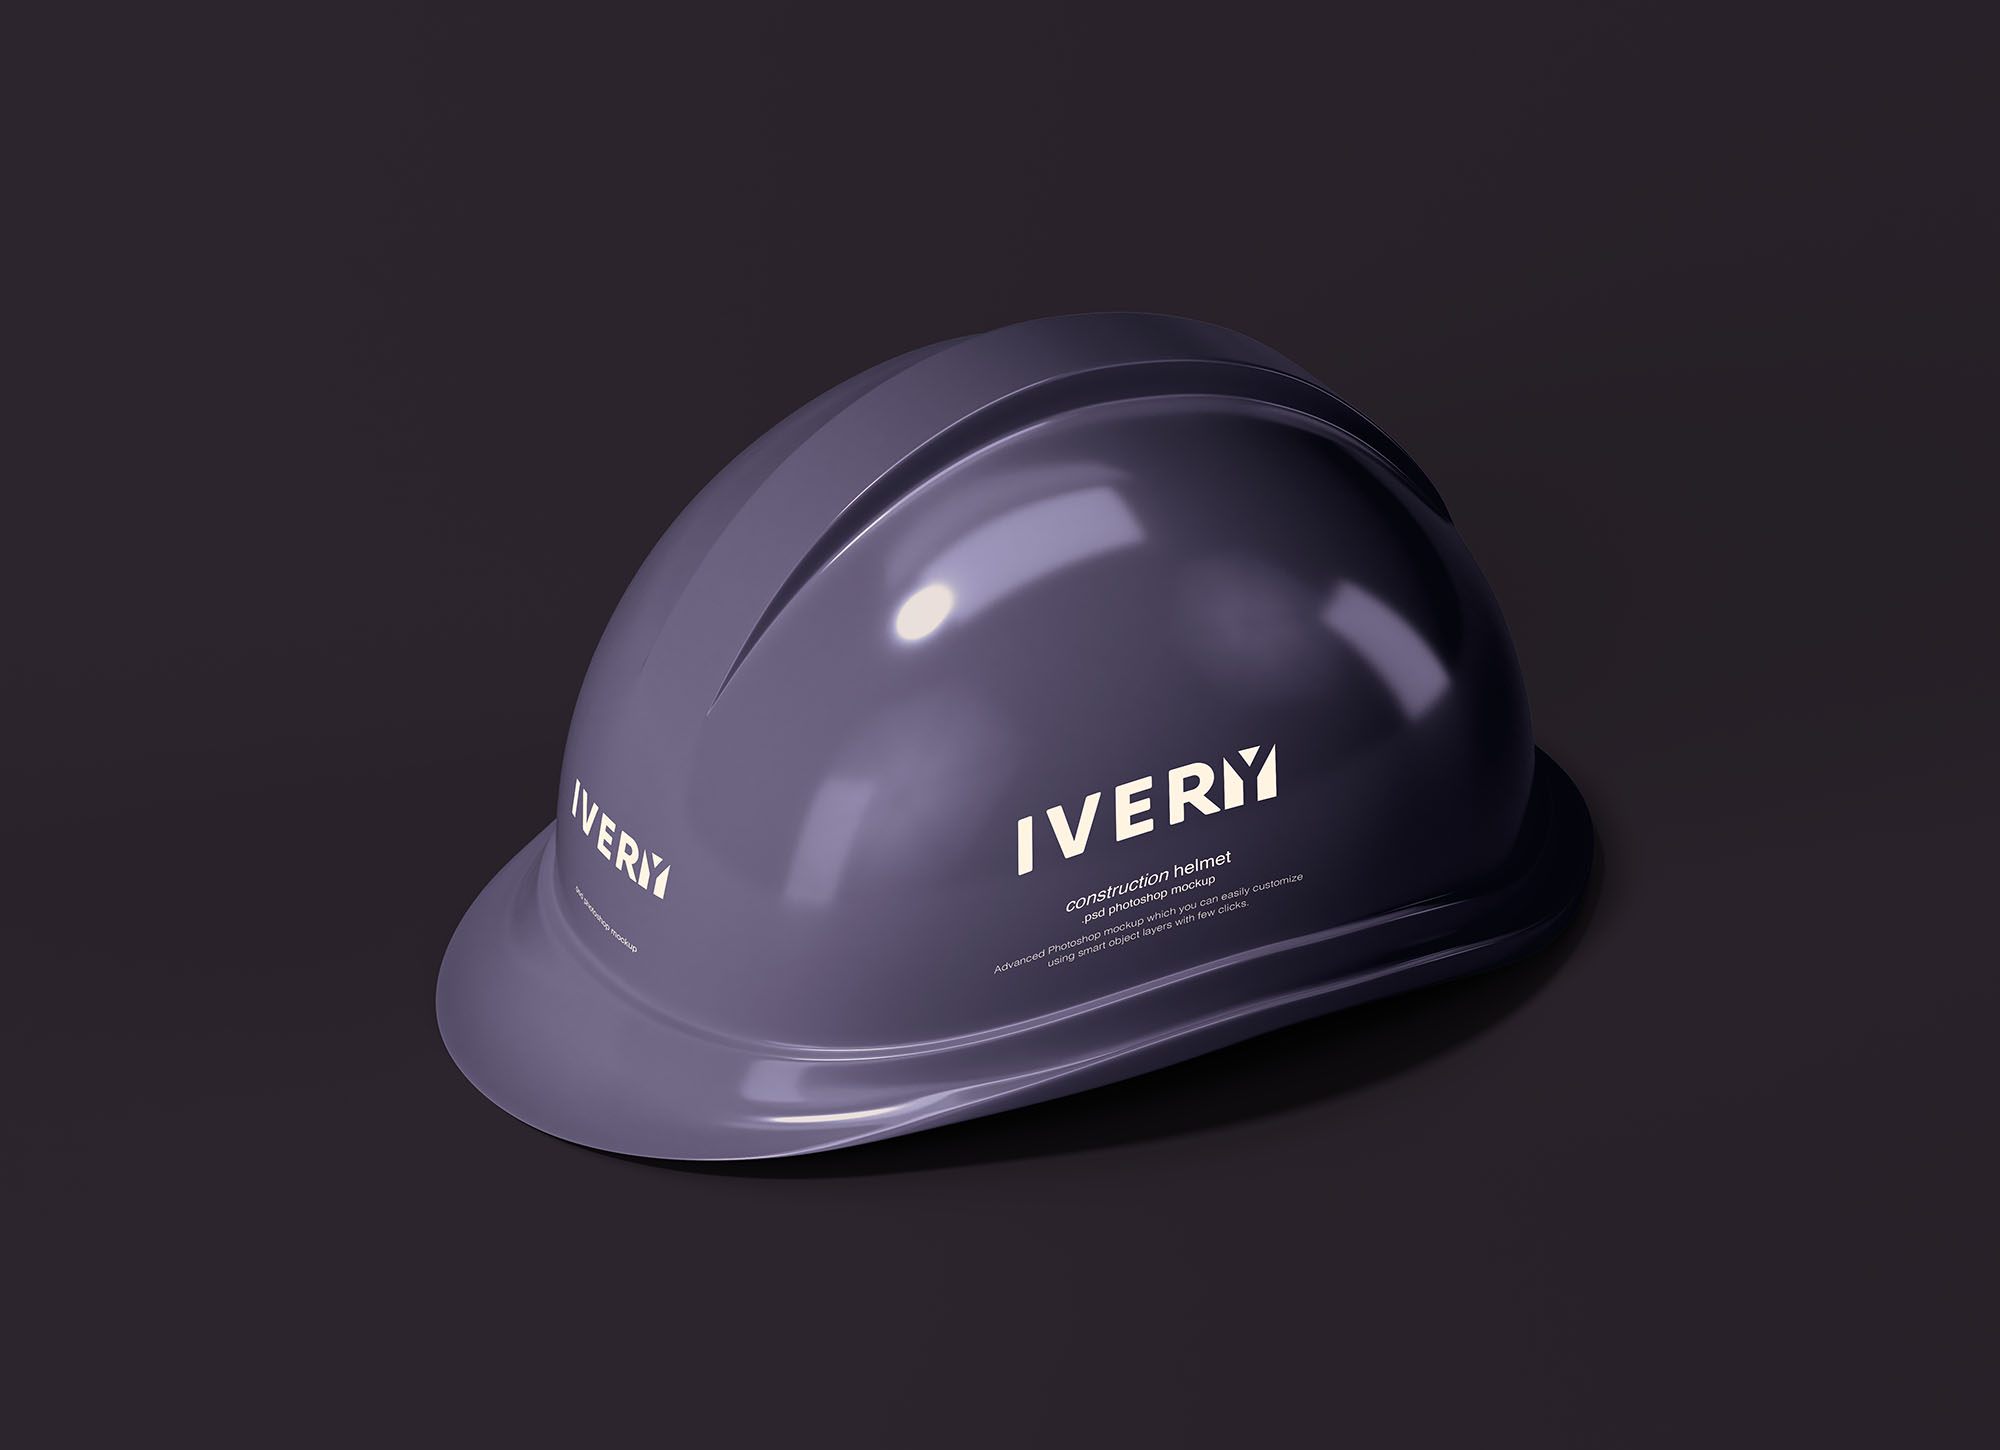 建筑头盔/工作头盔外观设计展示蚂蚁素材精选模板 Construction Helmet Mockup插图(1)